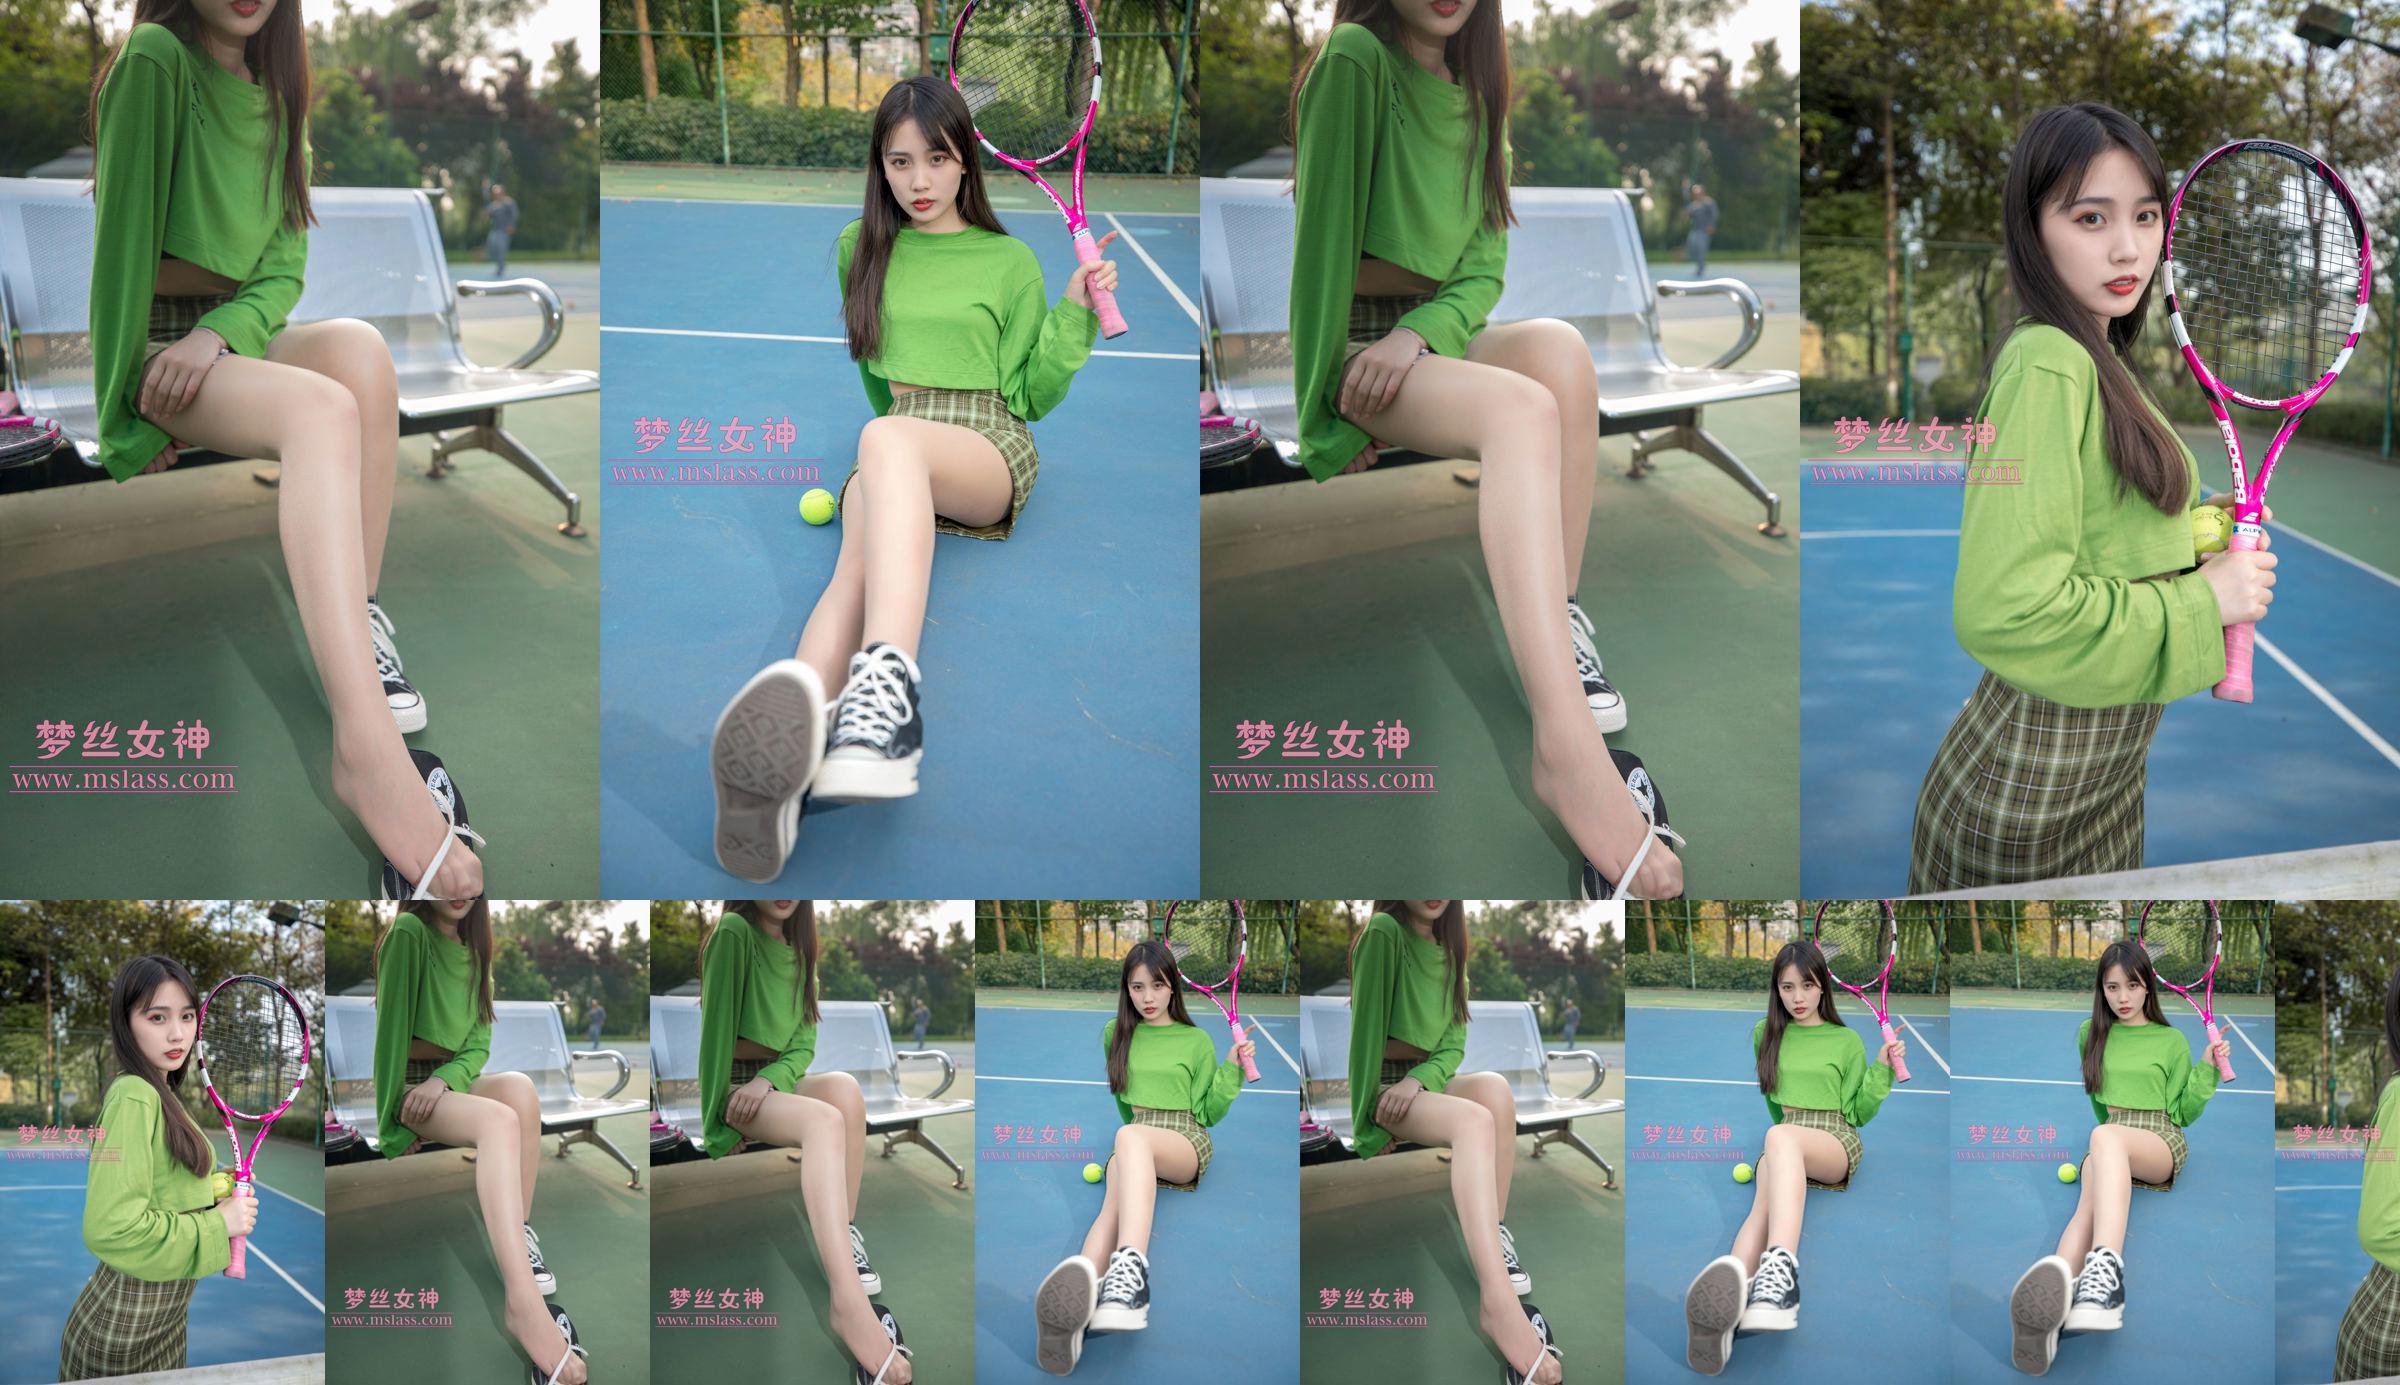 [Diosa de los sueños MSLASS] Chica del tenis Xiang Xuan No.1e3f85 Página 2